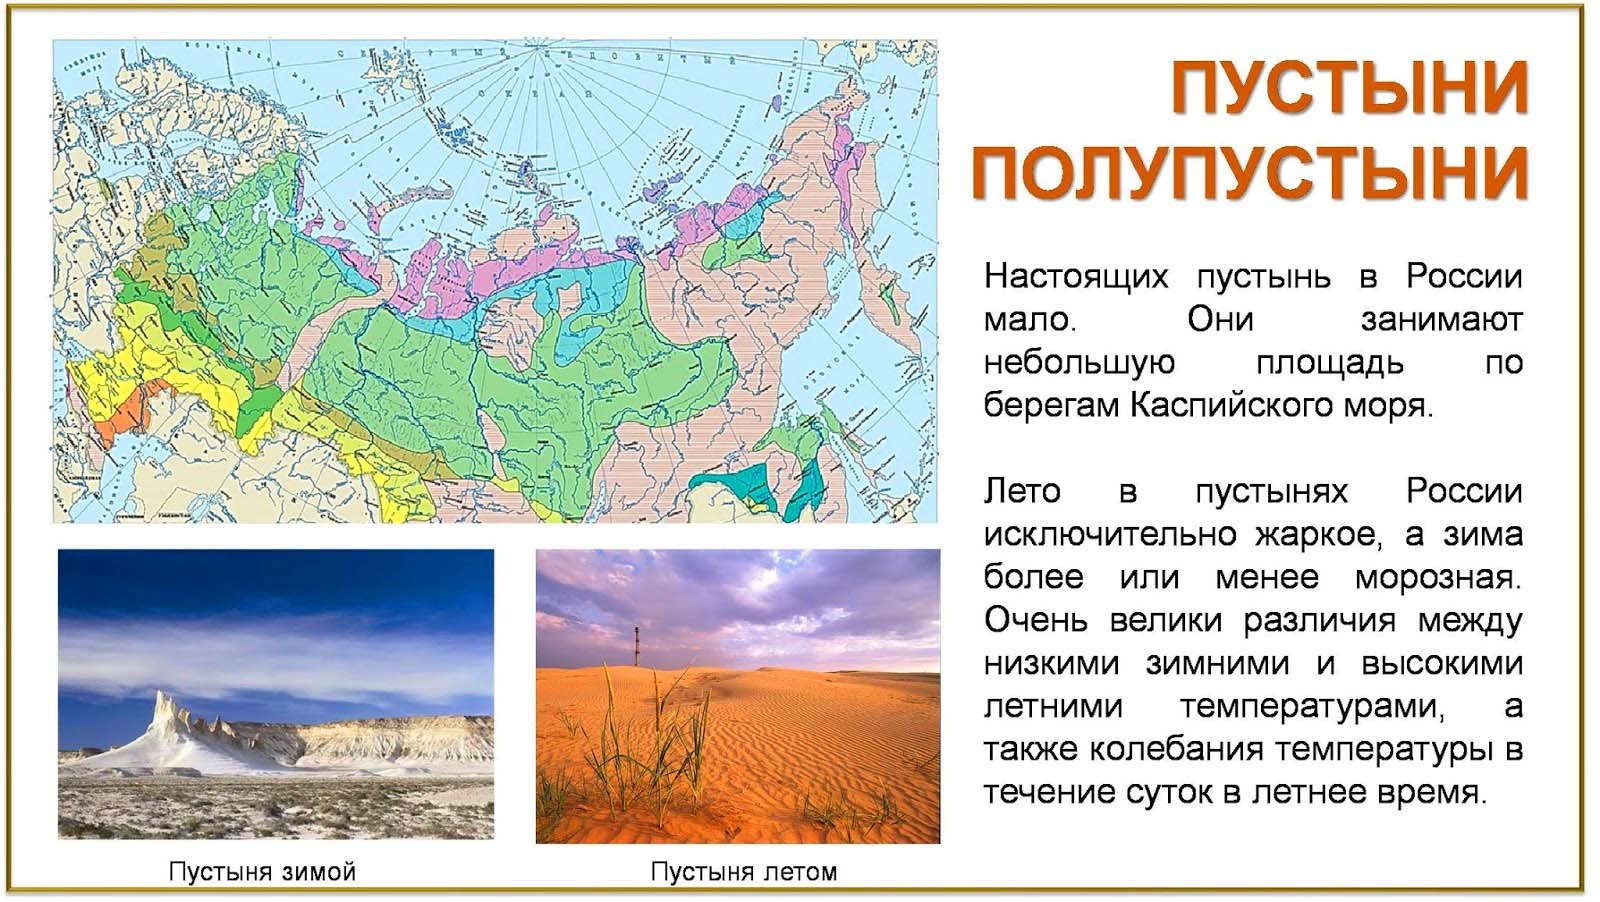 Название пустыни на карте. Зона пустынь и полупустынь в России на карте. Карта пустынь России. Расположение пустынь в России. Пустыни и полупустыни России на карте.